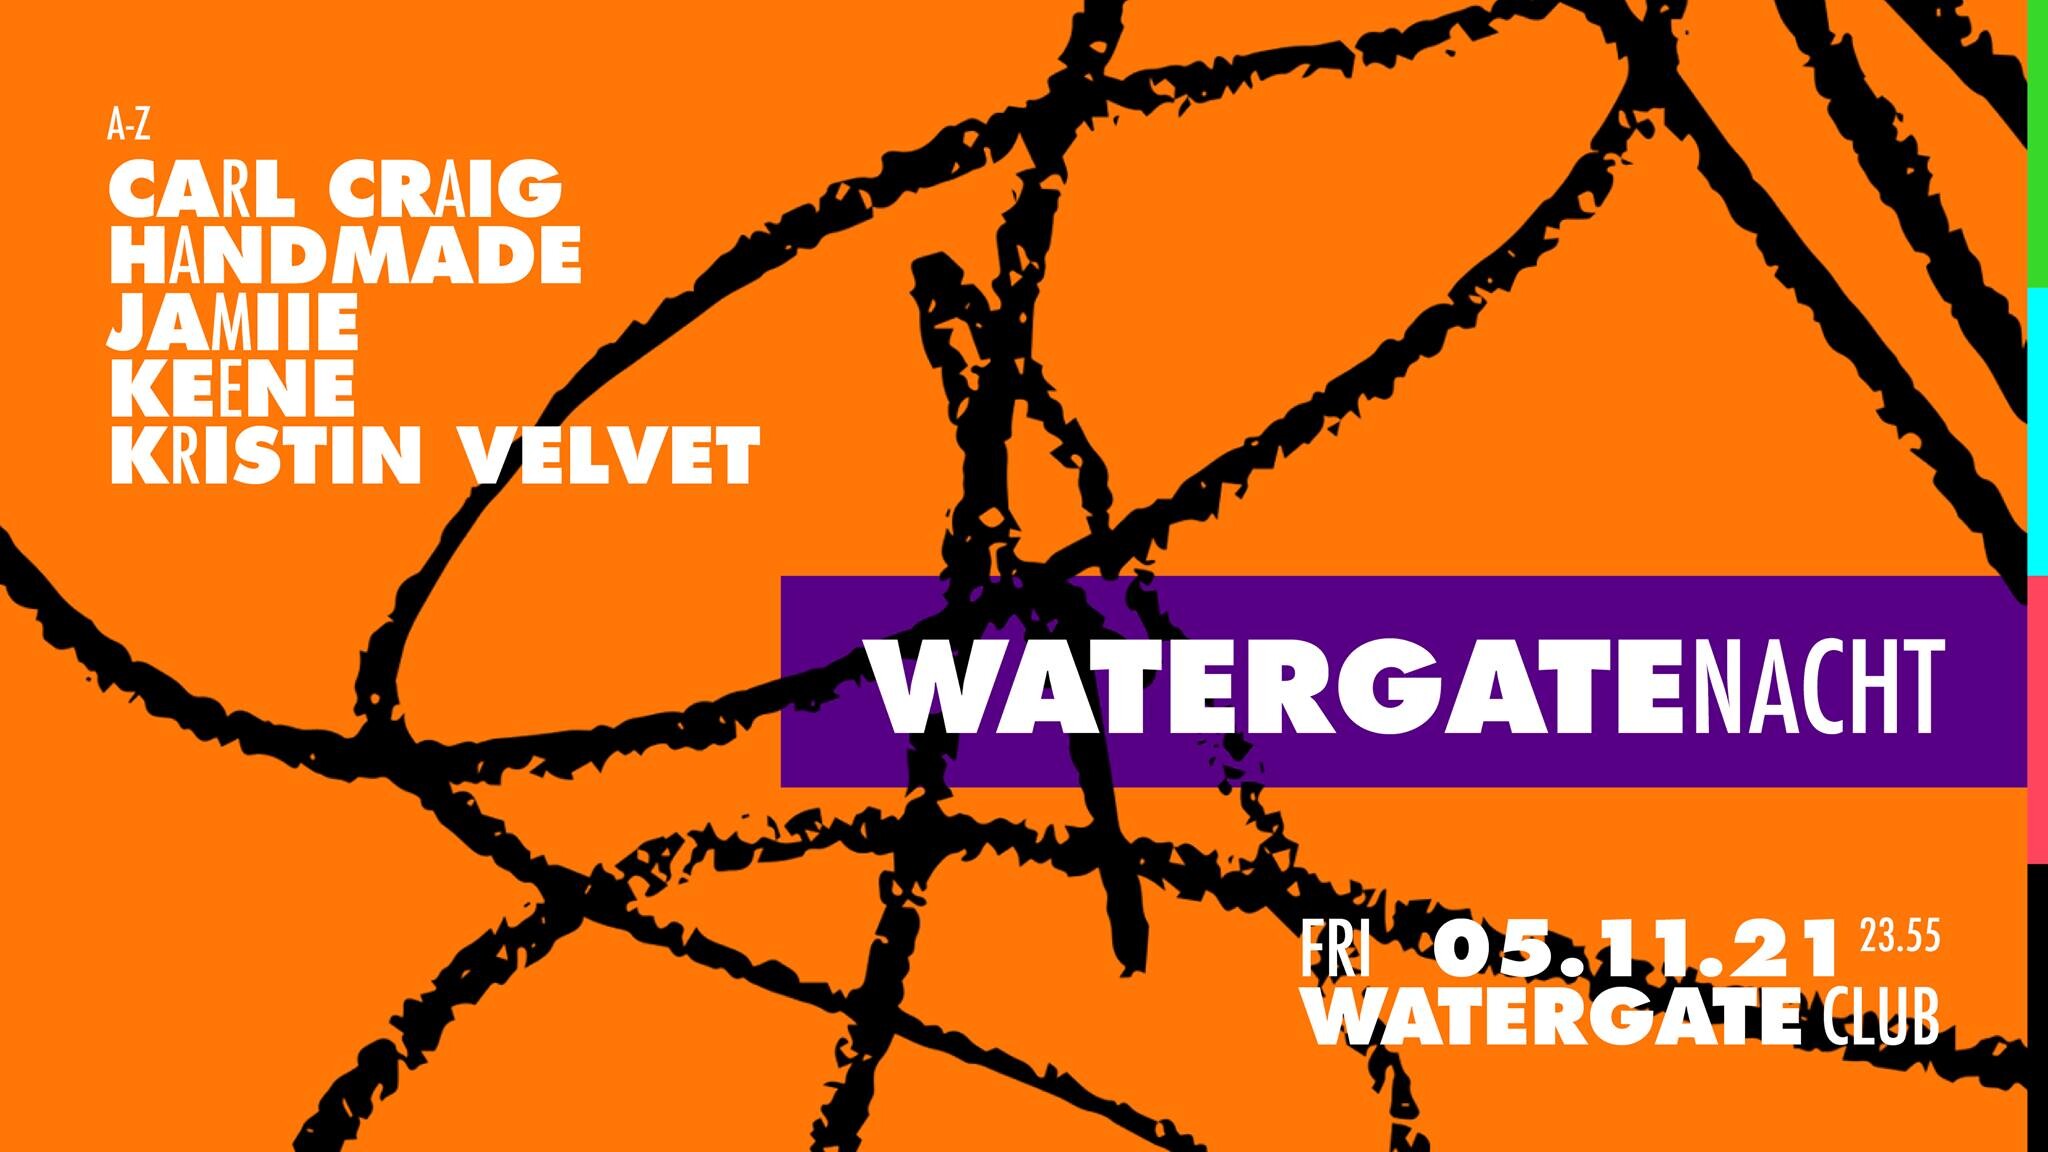 Watergate Berlin Eventflyer #1 vom 05.11.2021